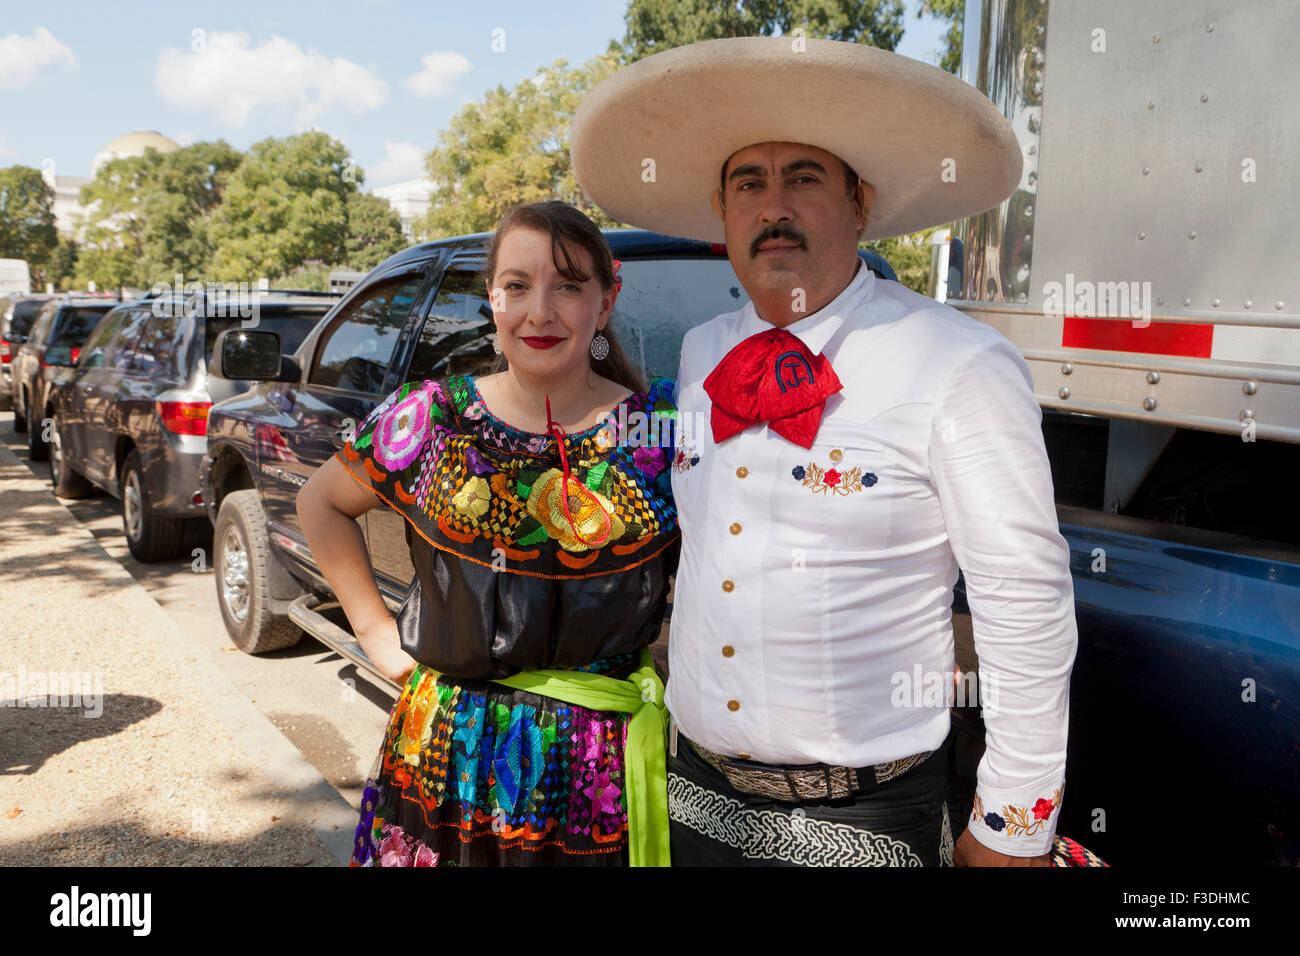 A Vaquero (Mexican cowboy) and his wife - USA Stock Photo